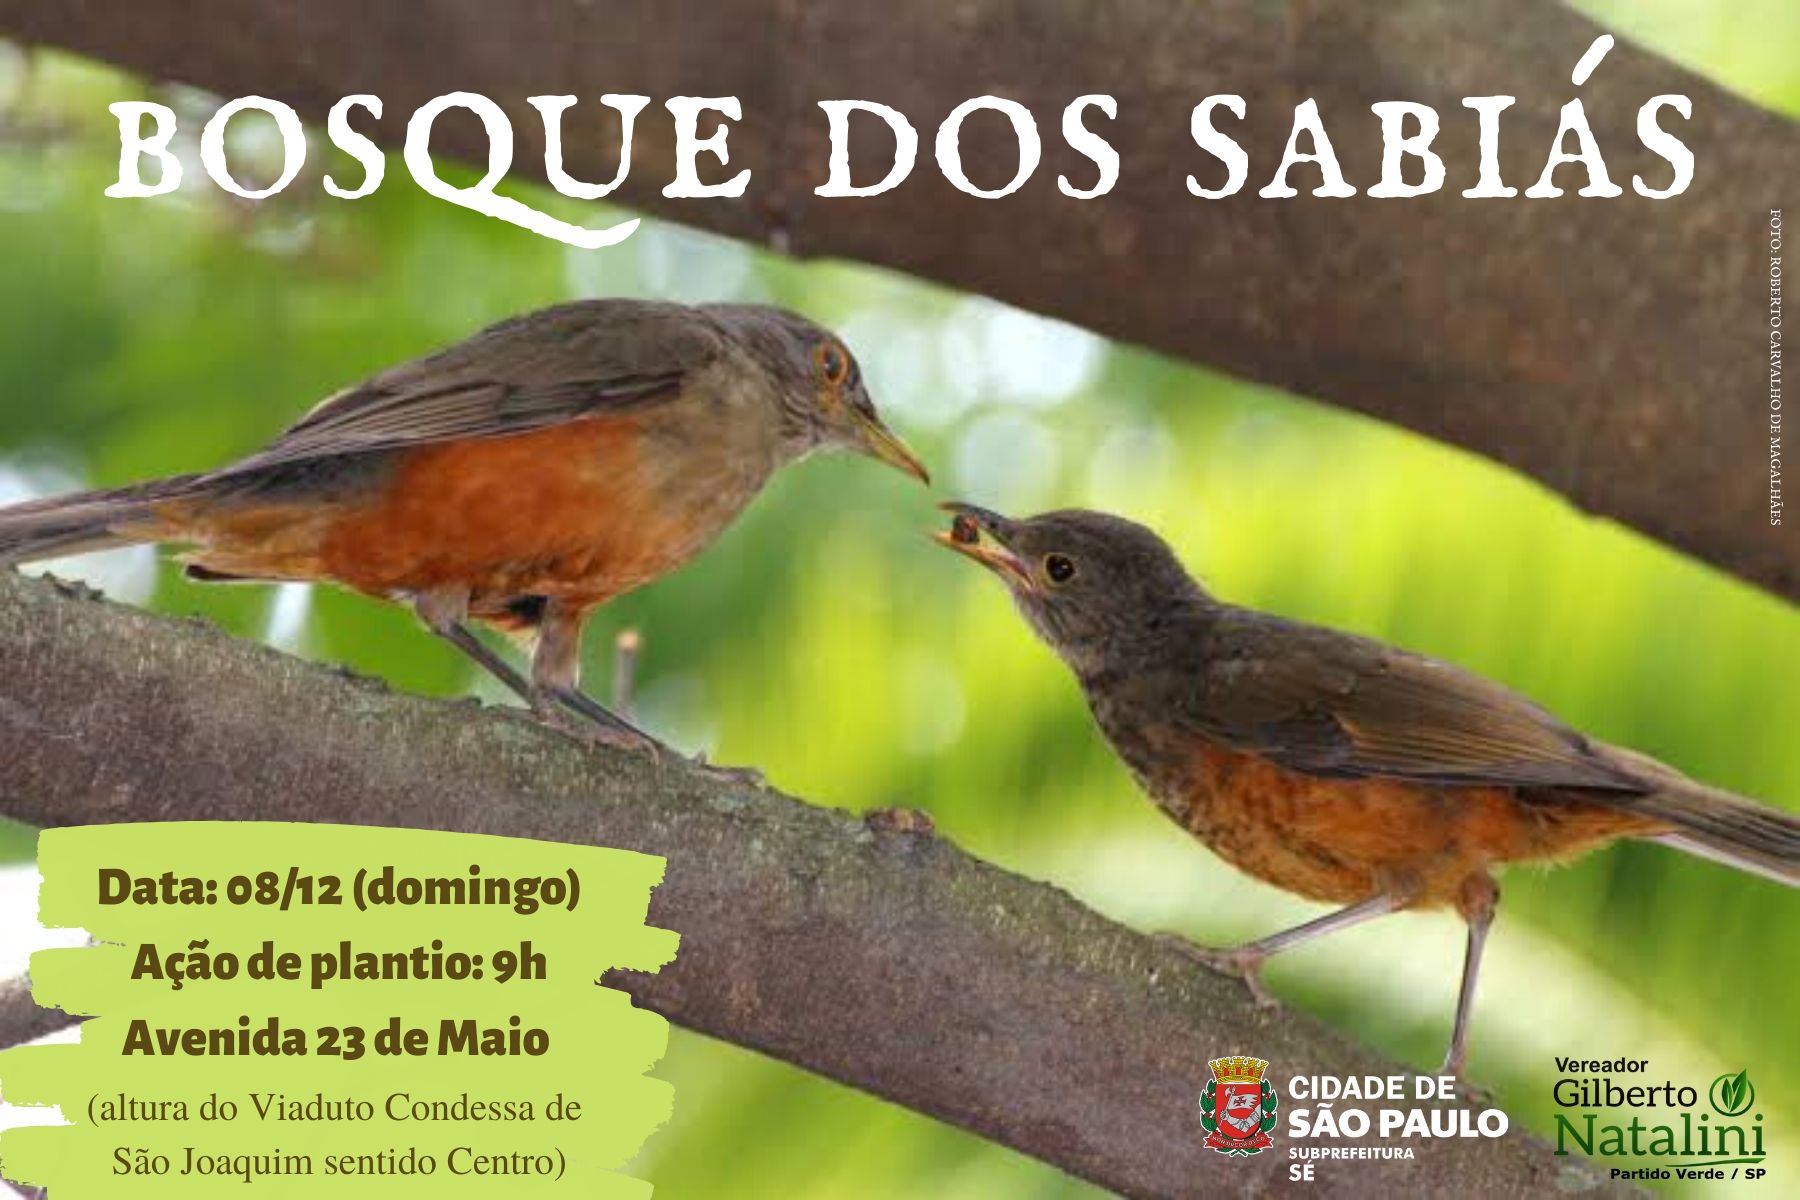 Foto de dois passarinhos sabiás e está escrito Bosque dos Sabiás. Há logotipo da Subprefeitura Sé e do vereador Gilberto Natalini